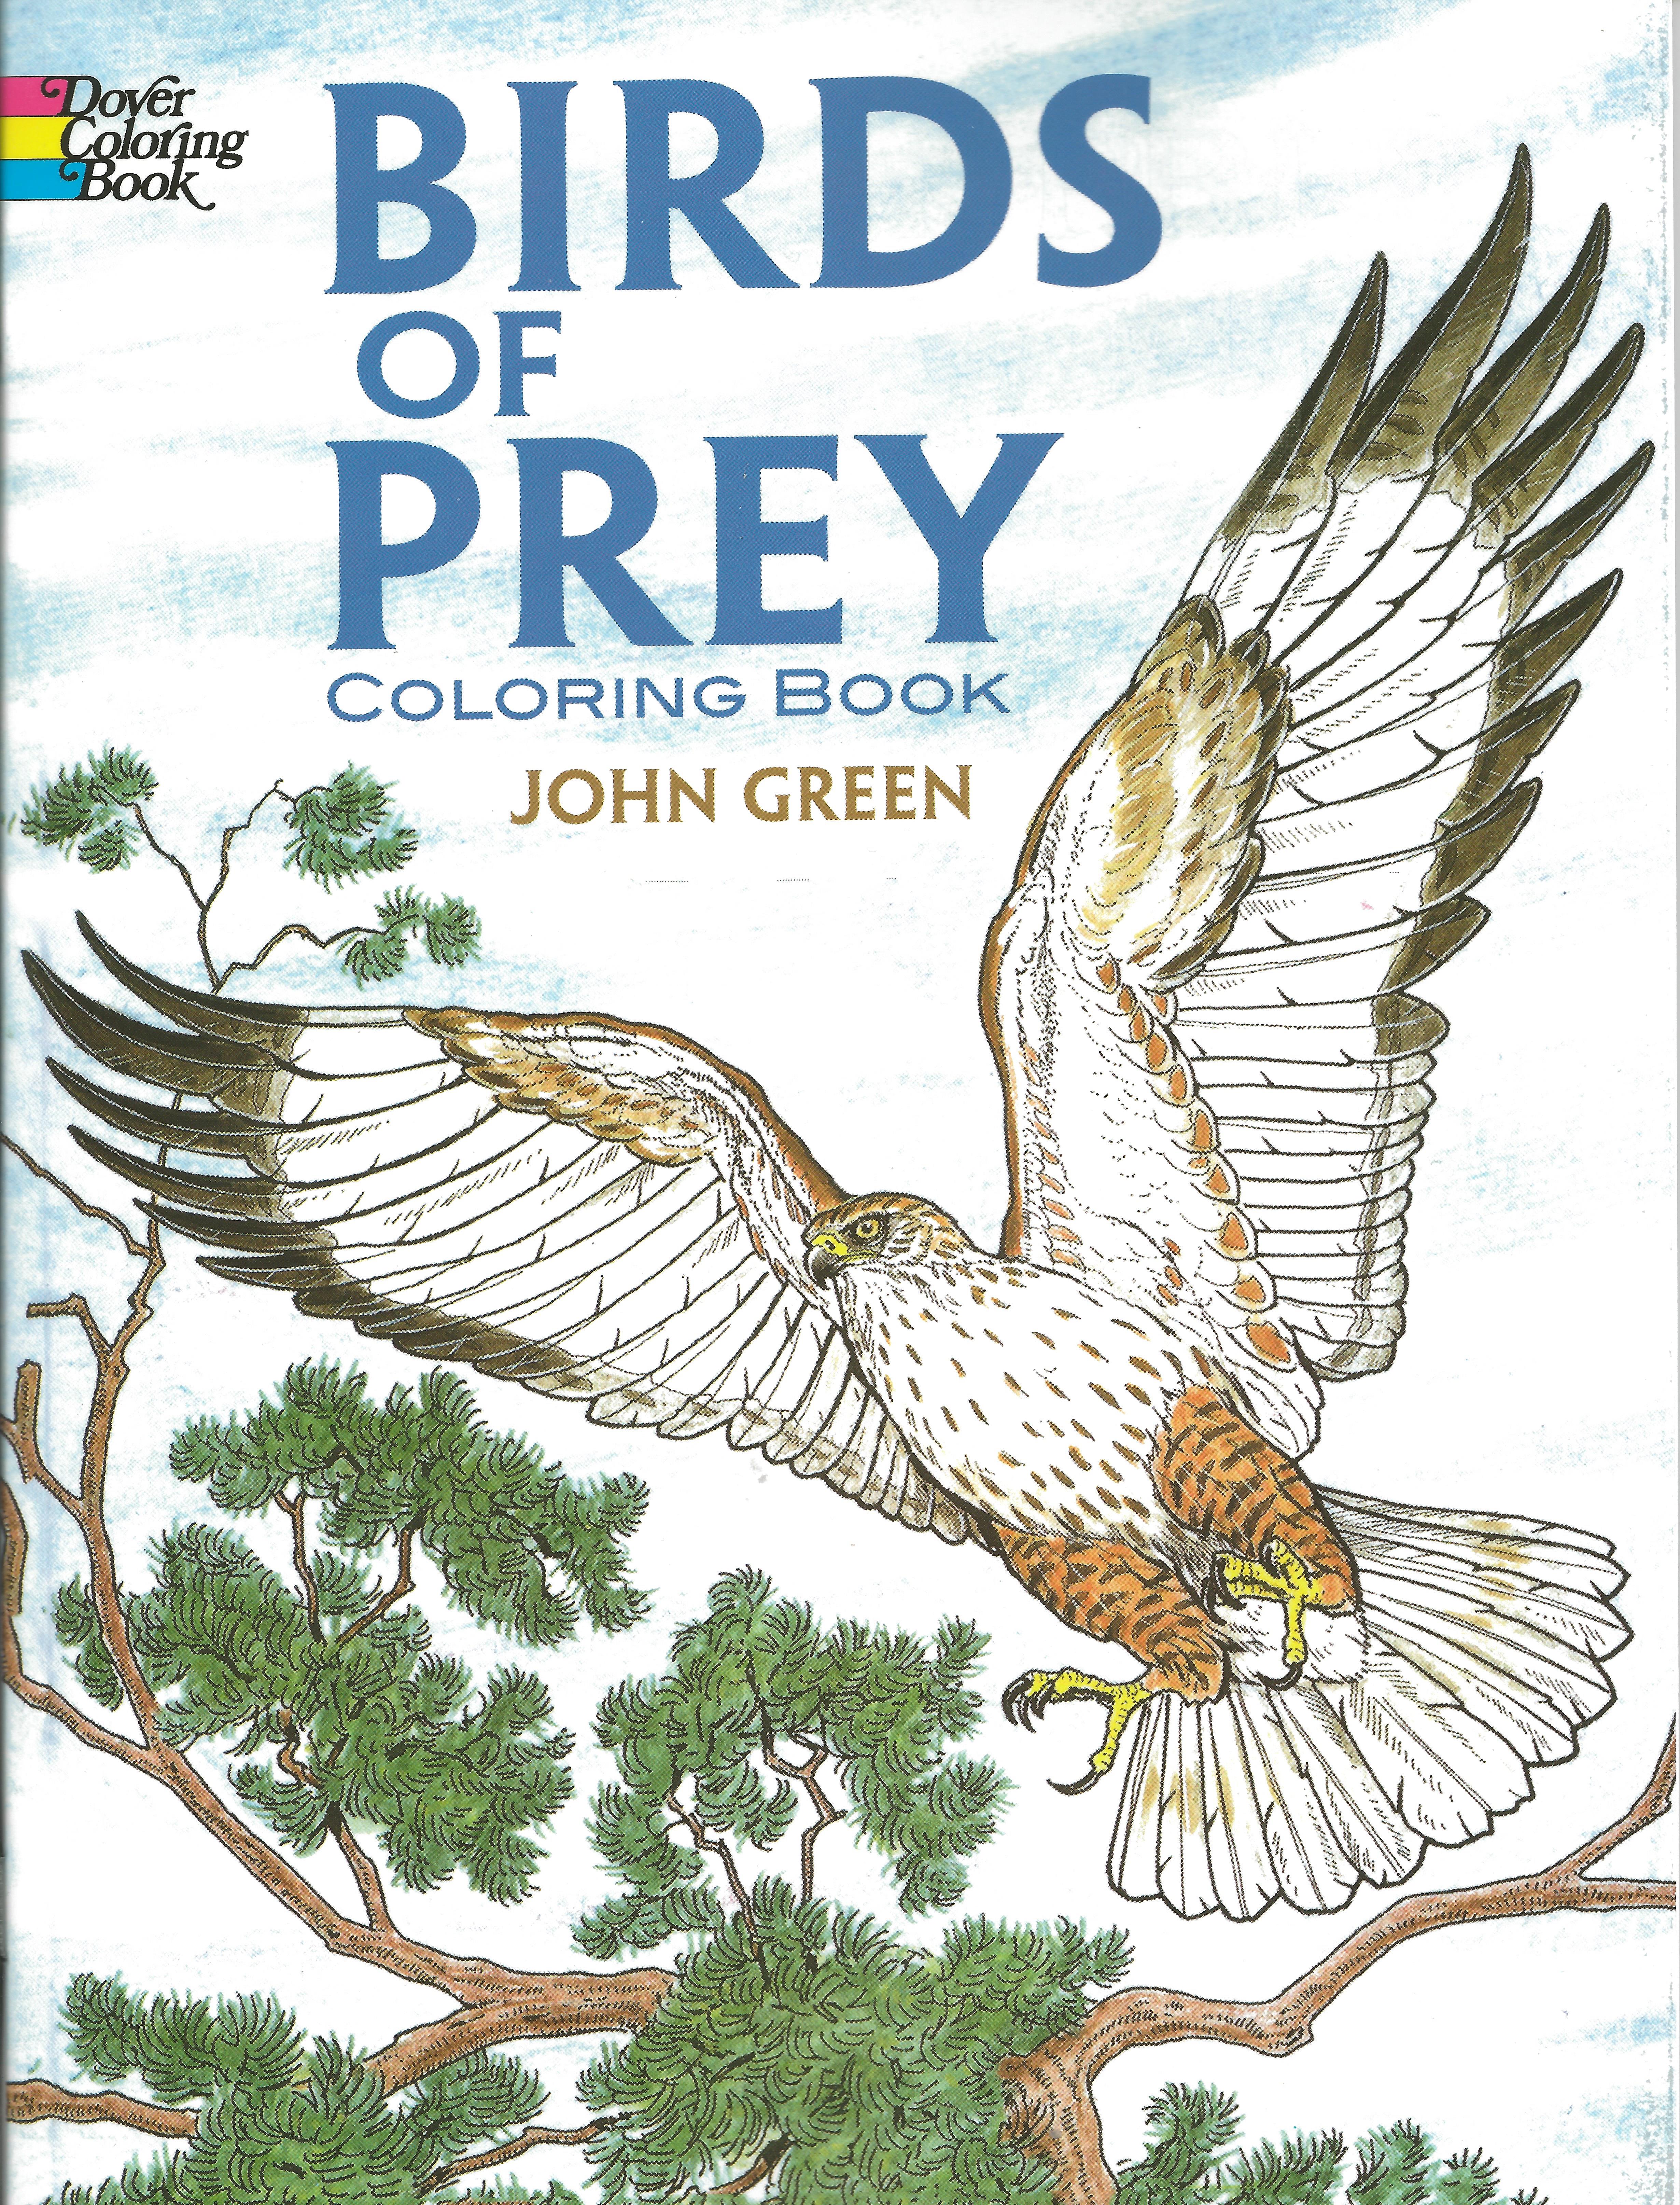 BIRDS OF PREY COLORING BOOK